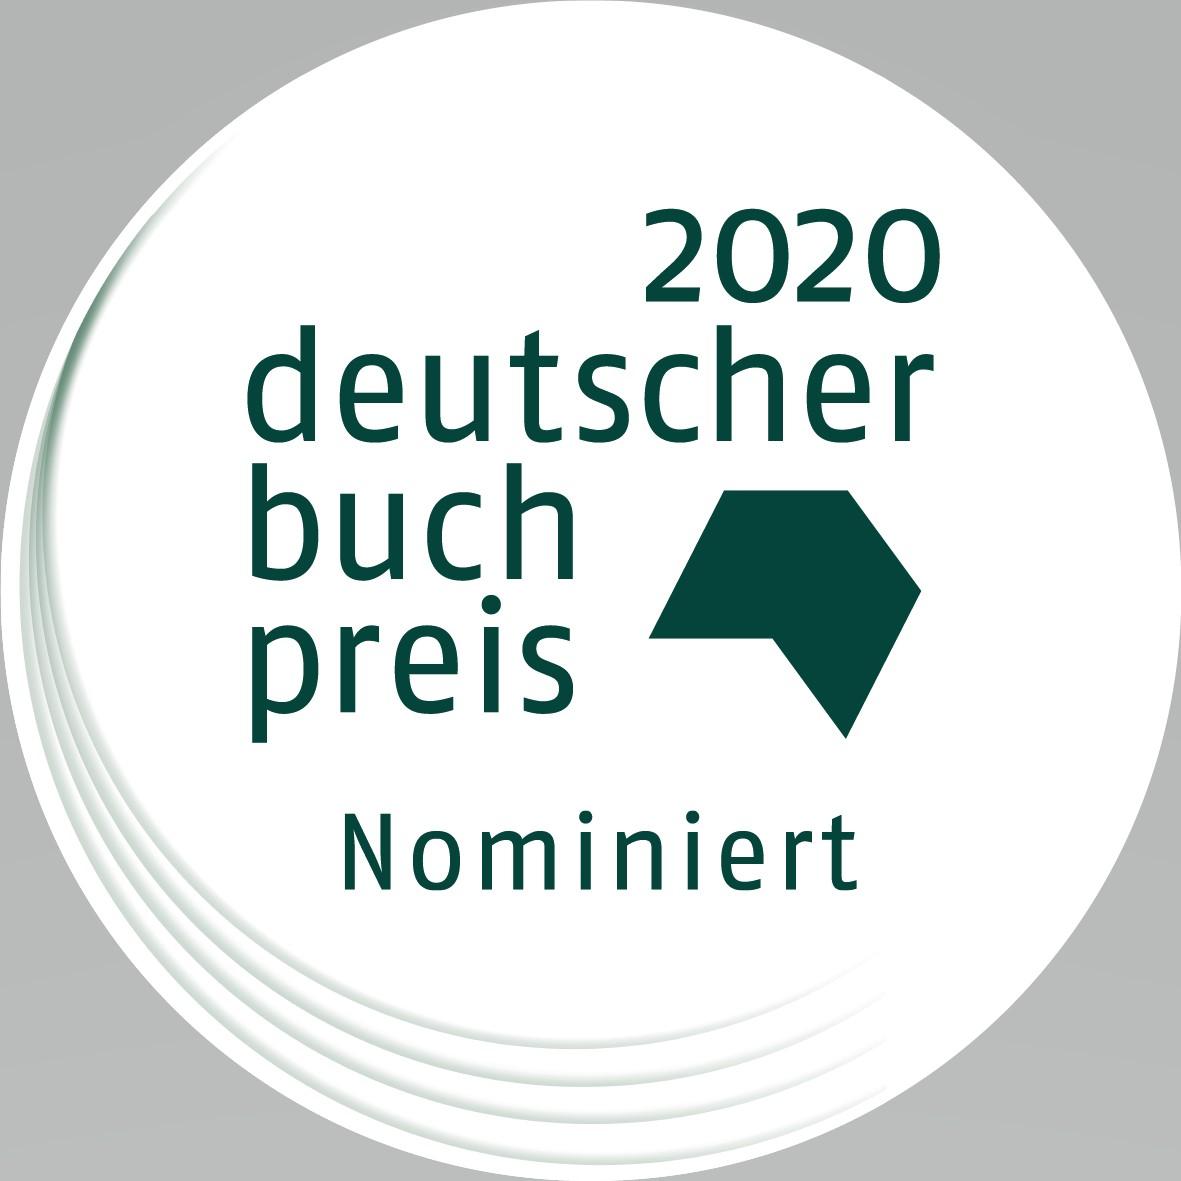 Deutscher Buchpreis 2020